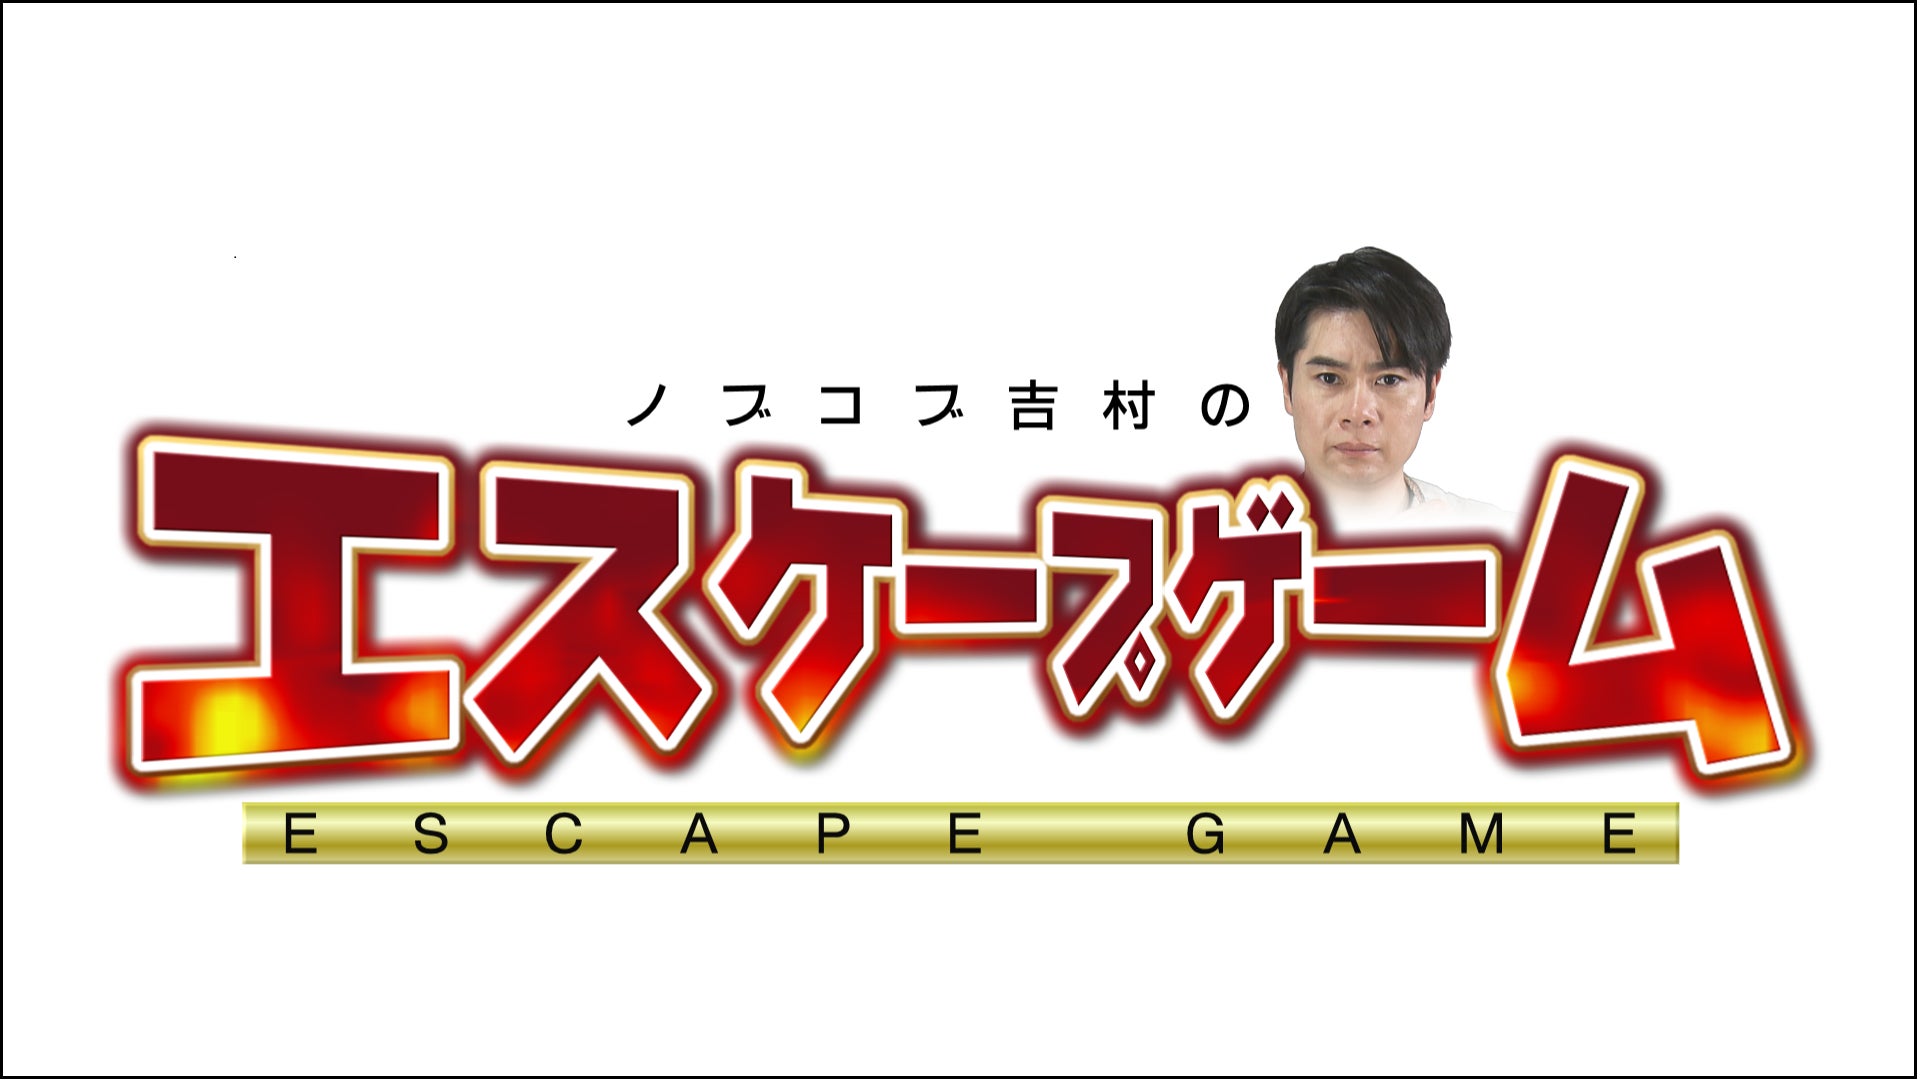 HTB 北海道テレビで放送「ノブコブ吉村のエスケープゲーム」配信のお知らせ